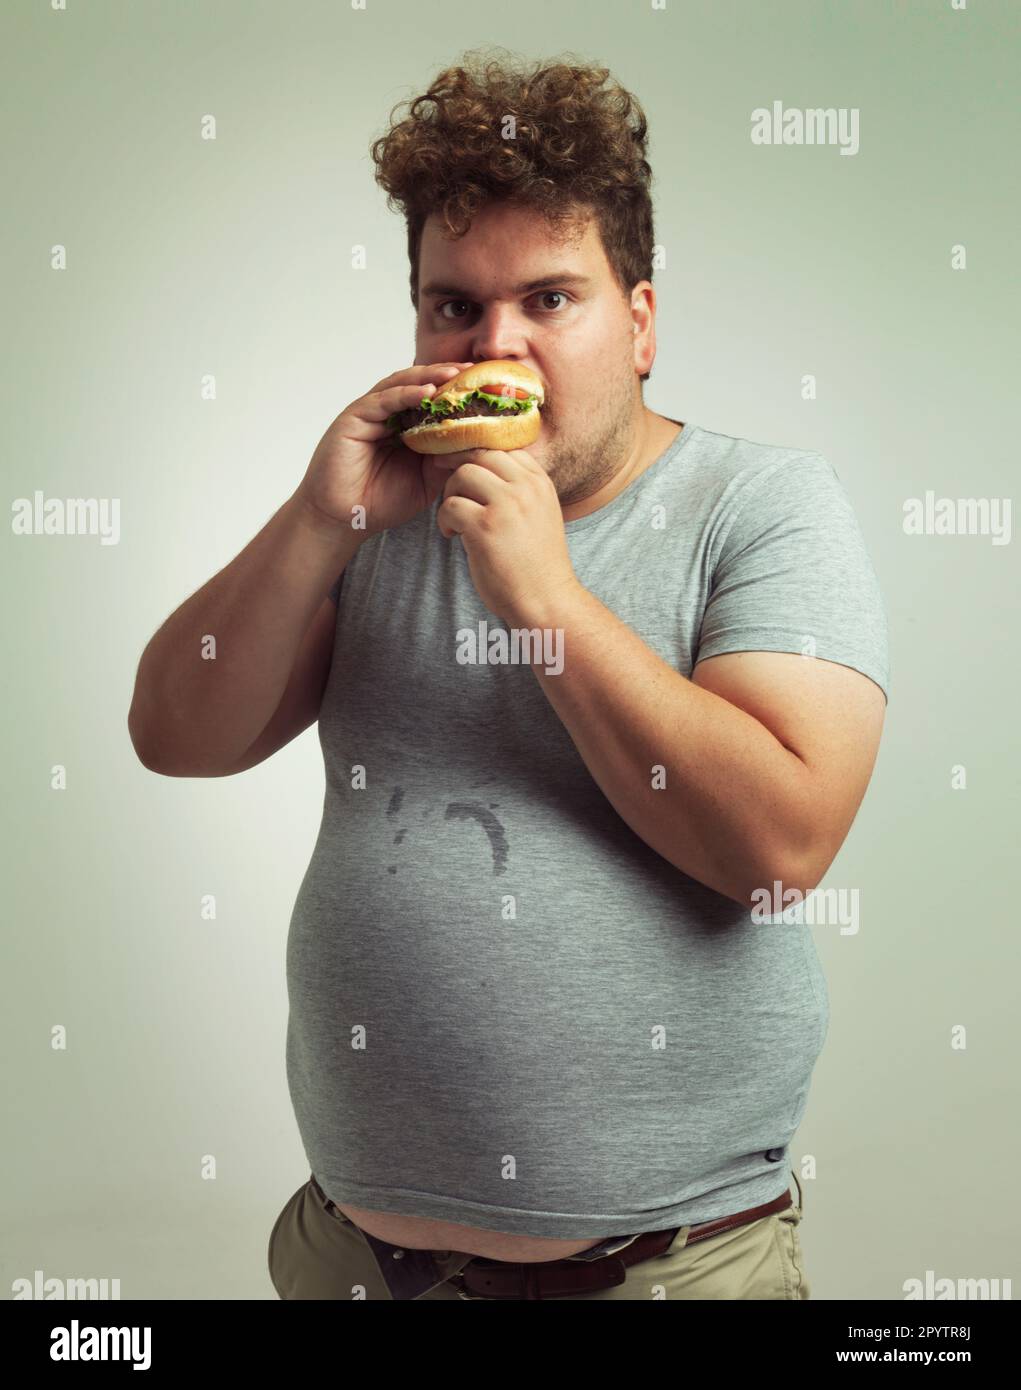 Ce hamburger est le mien. Photo studio d'un homme en surpoids qui se mord dans un hamburger. Banque D'Images